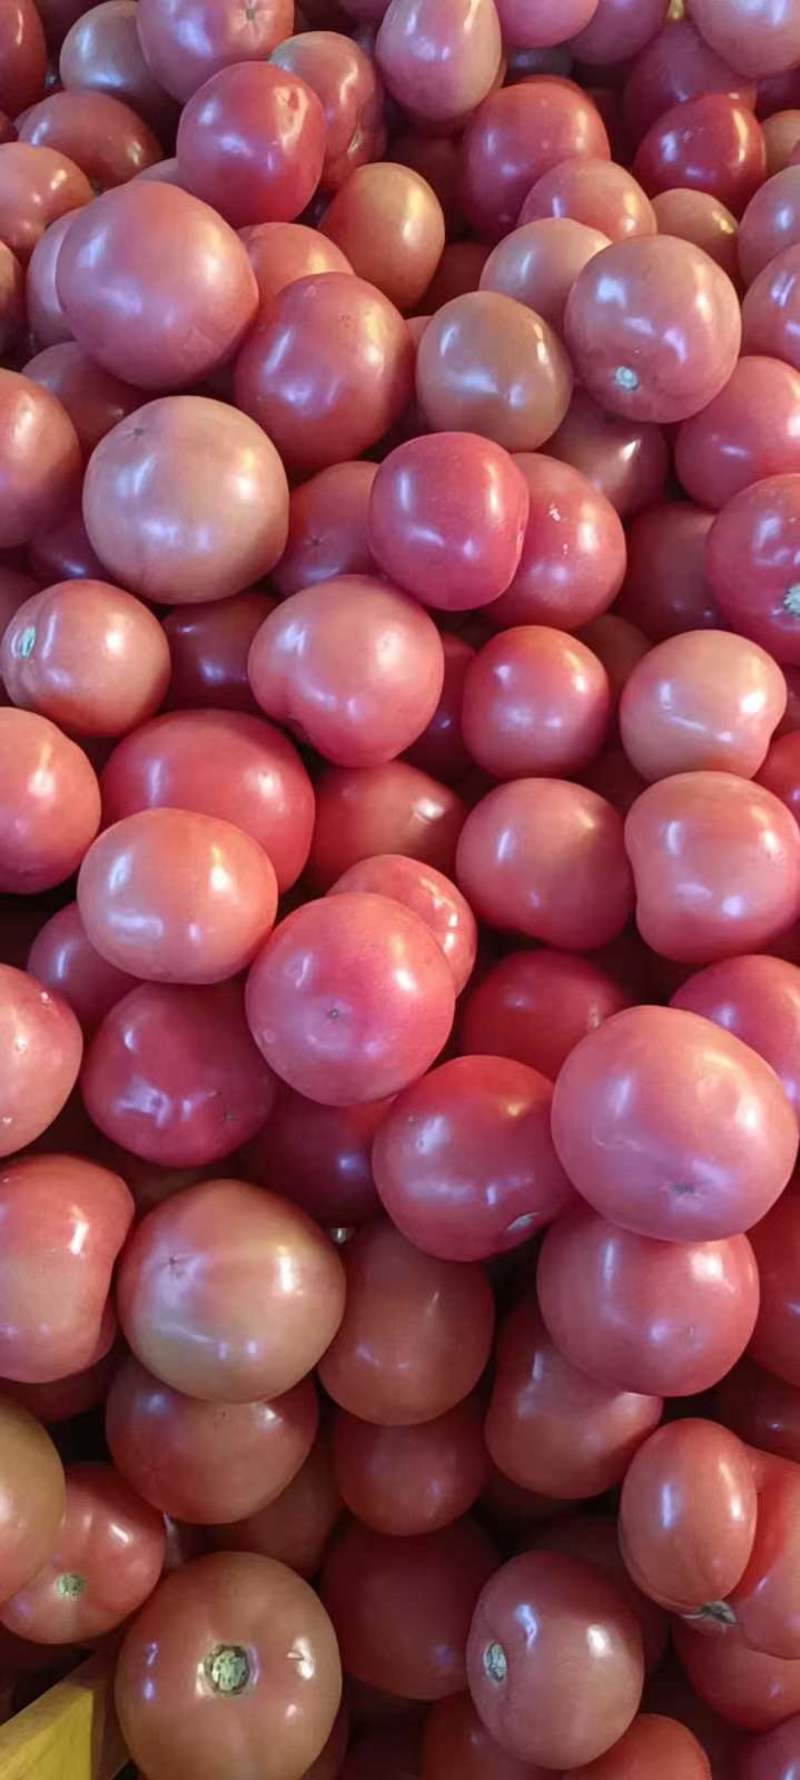 【牛商推荐】元谋西红柿番茄对接商超品质保证可视频看货